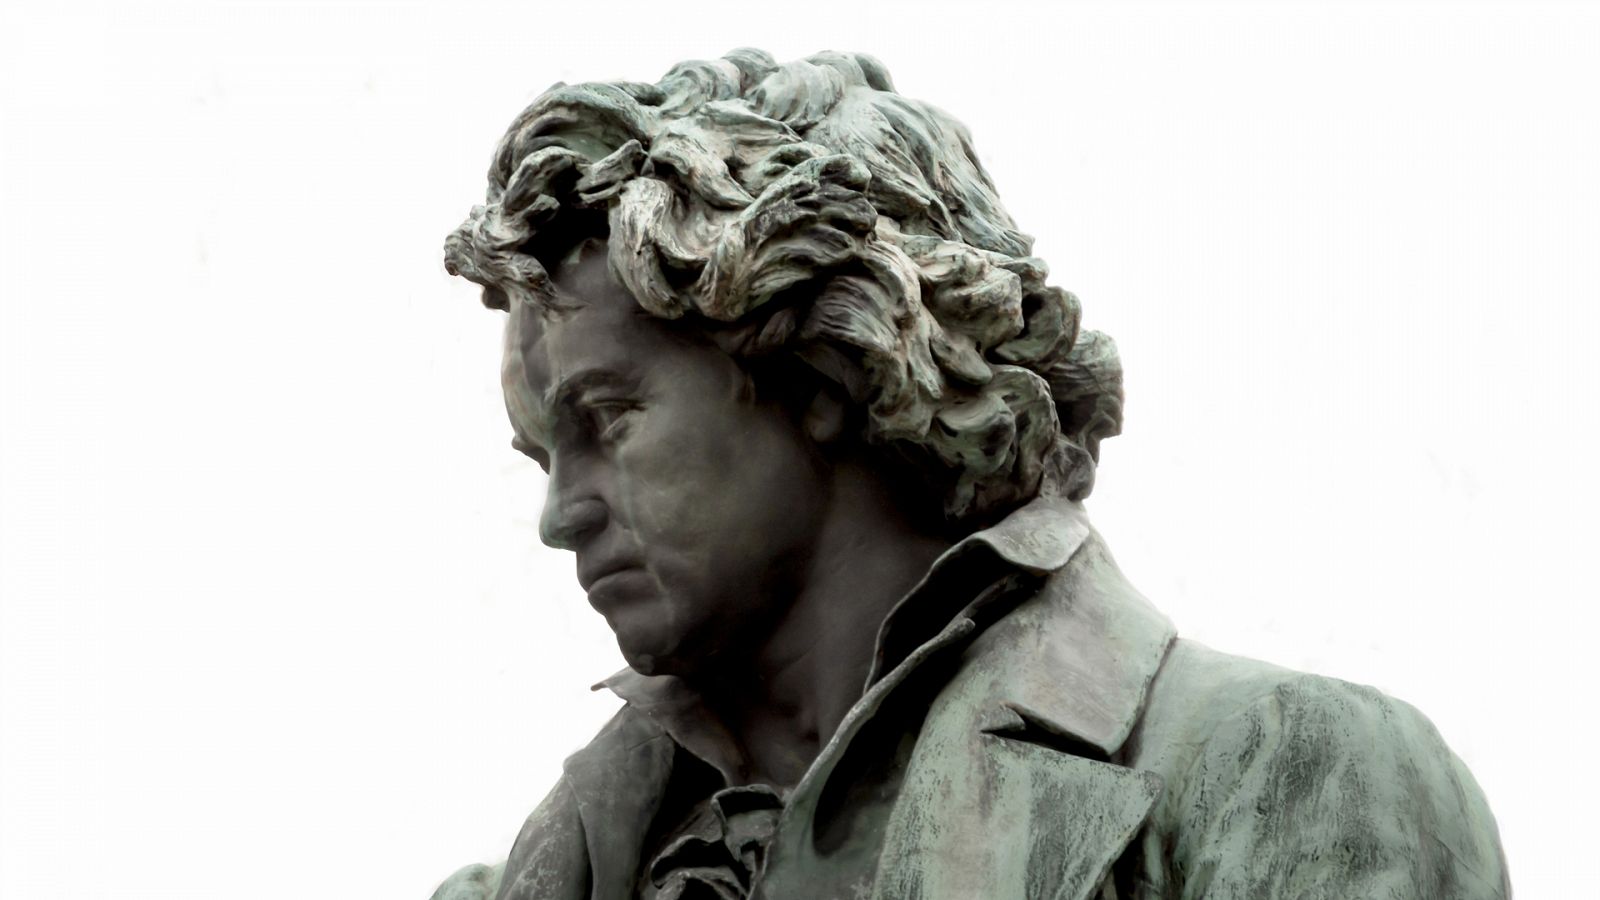 Somos documentales - Beethoven, una estrella del pop 250 años despues - ver ahora